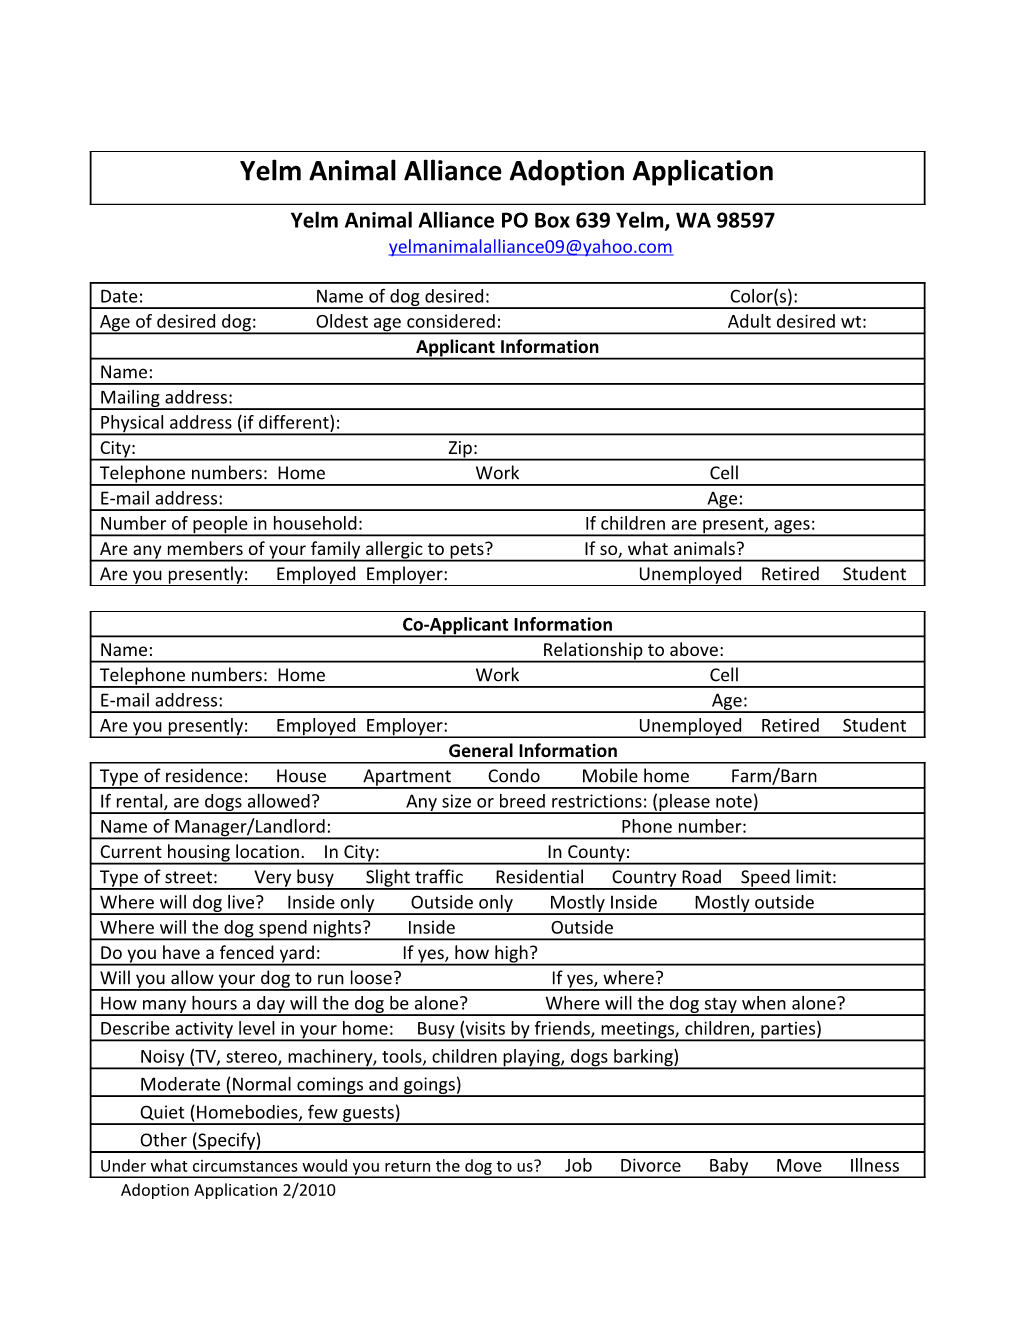 Yelm Animal Alliance PO Box 639 Yelm, WA 98597